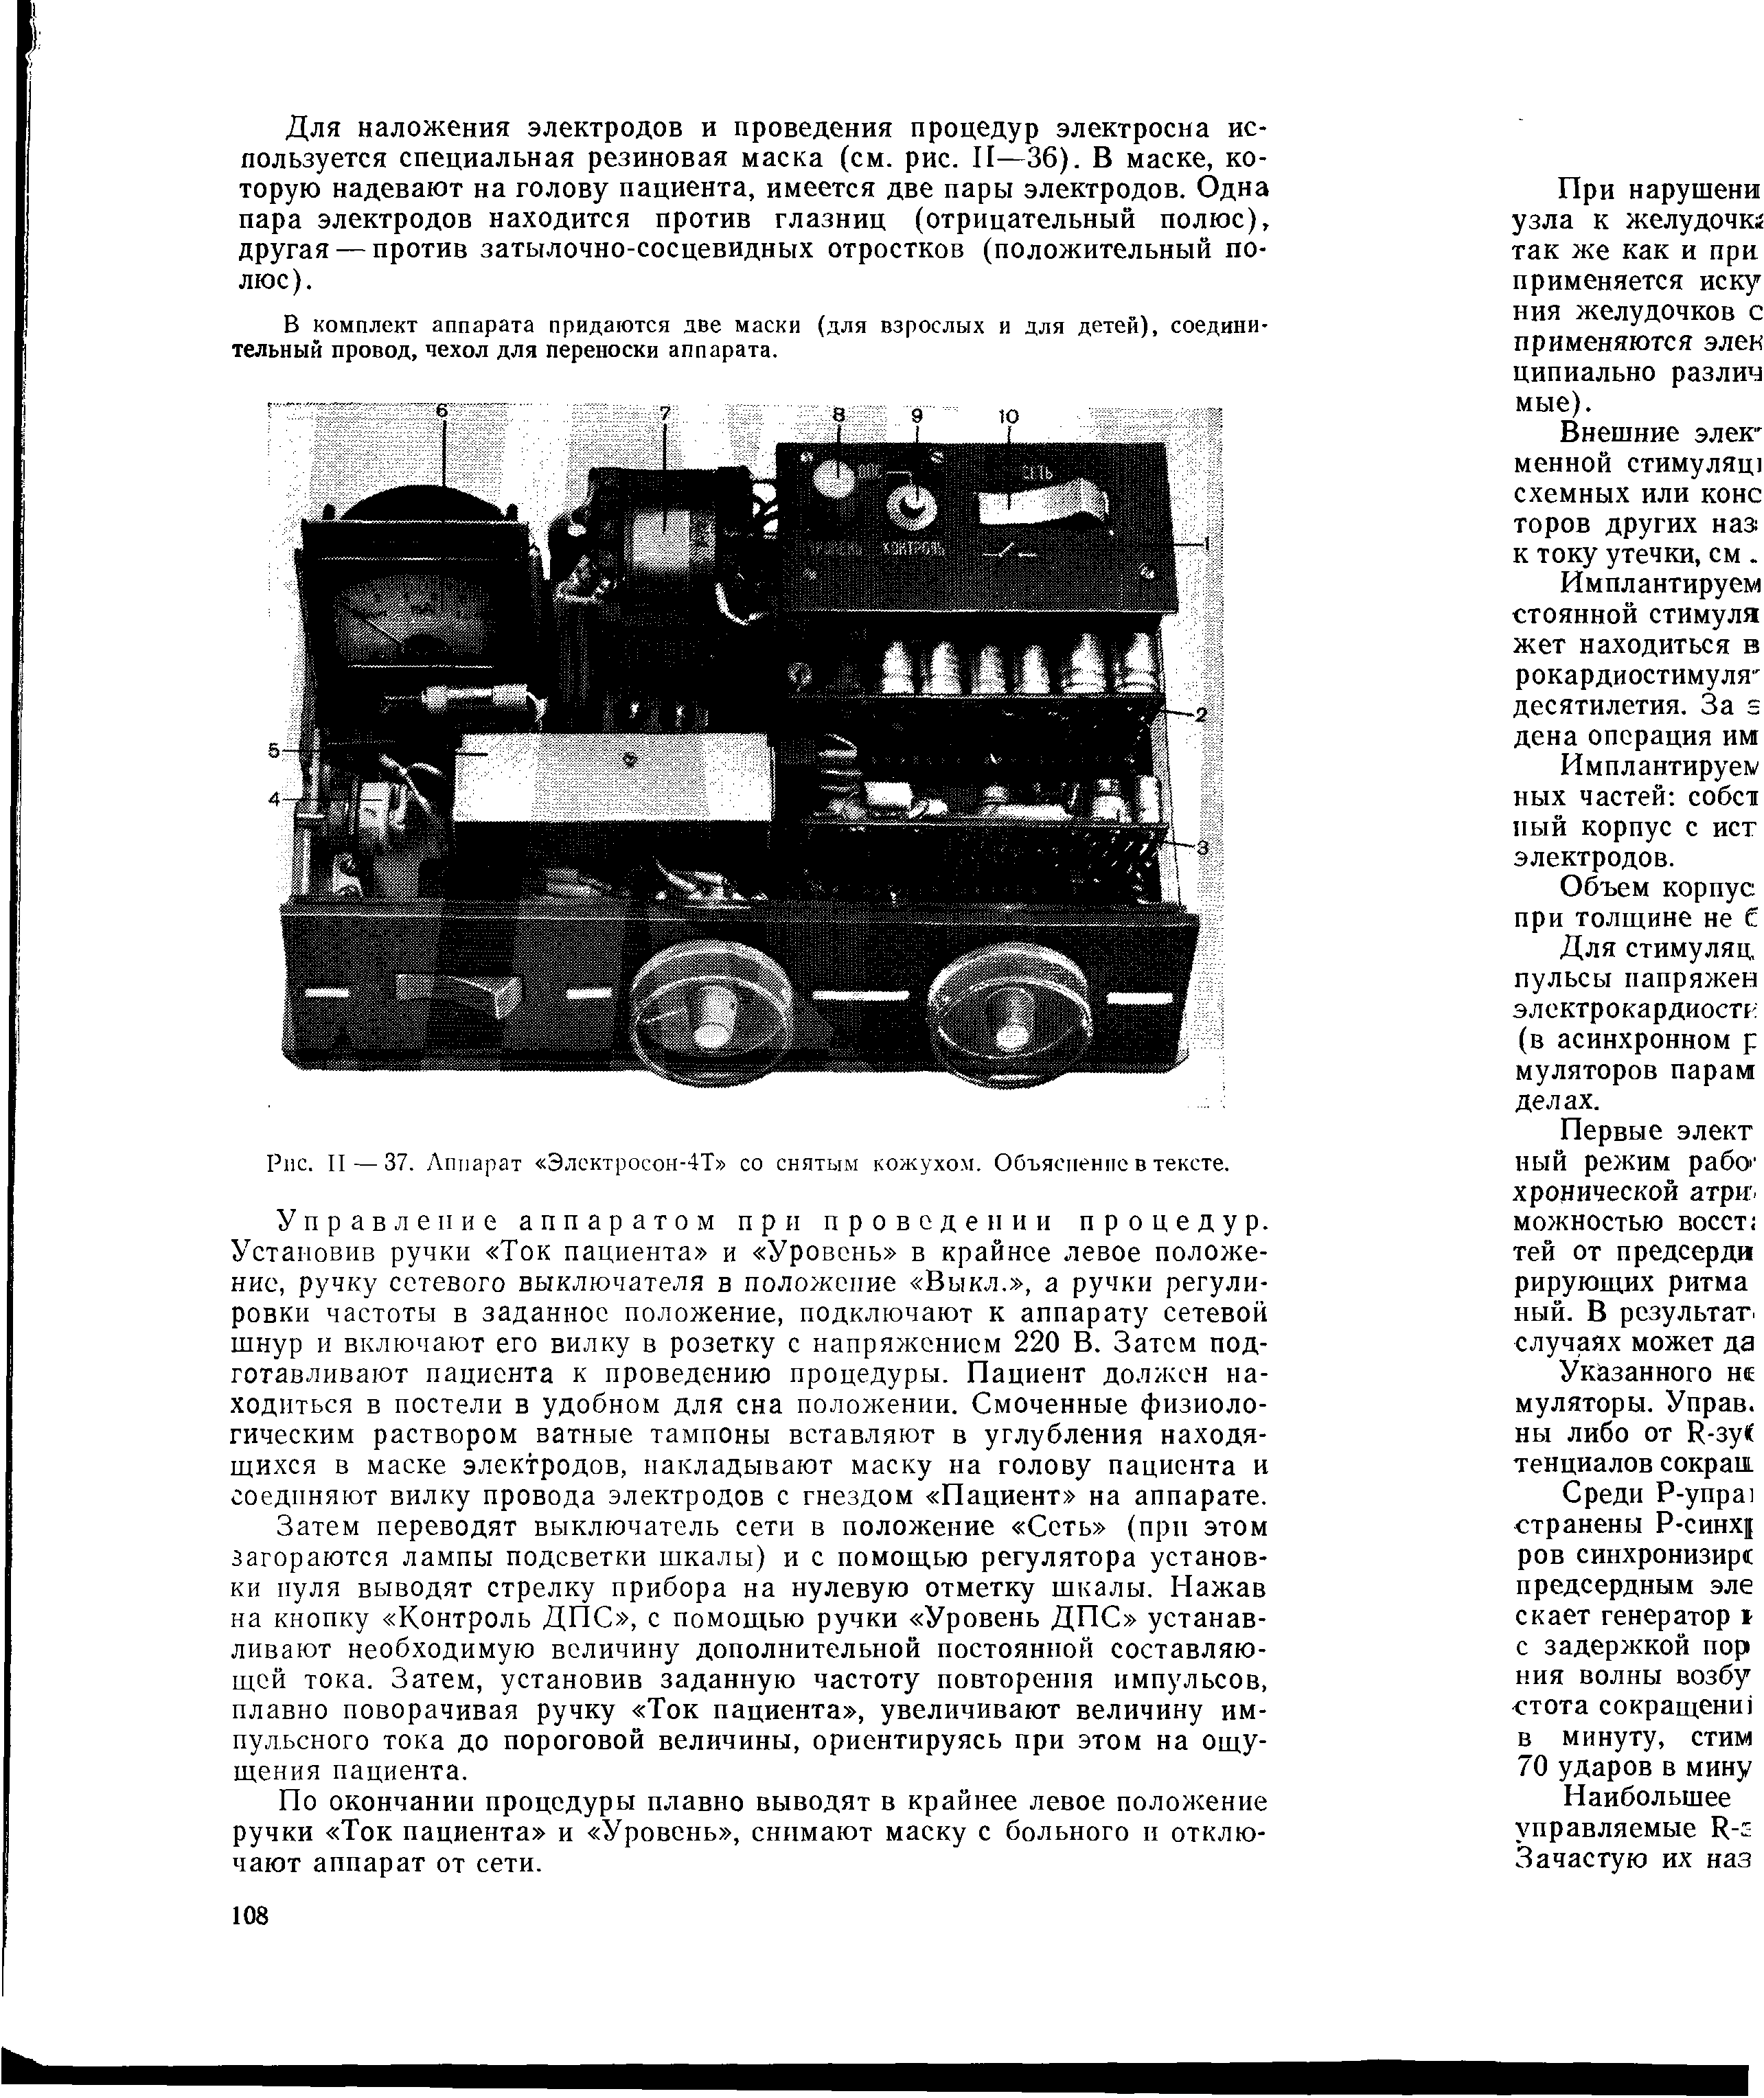 Рис. II — 37. Аппарат Электросон-4Т со снятым кожухом. Объяснение в тексте.